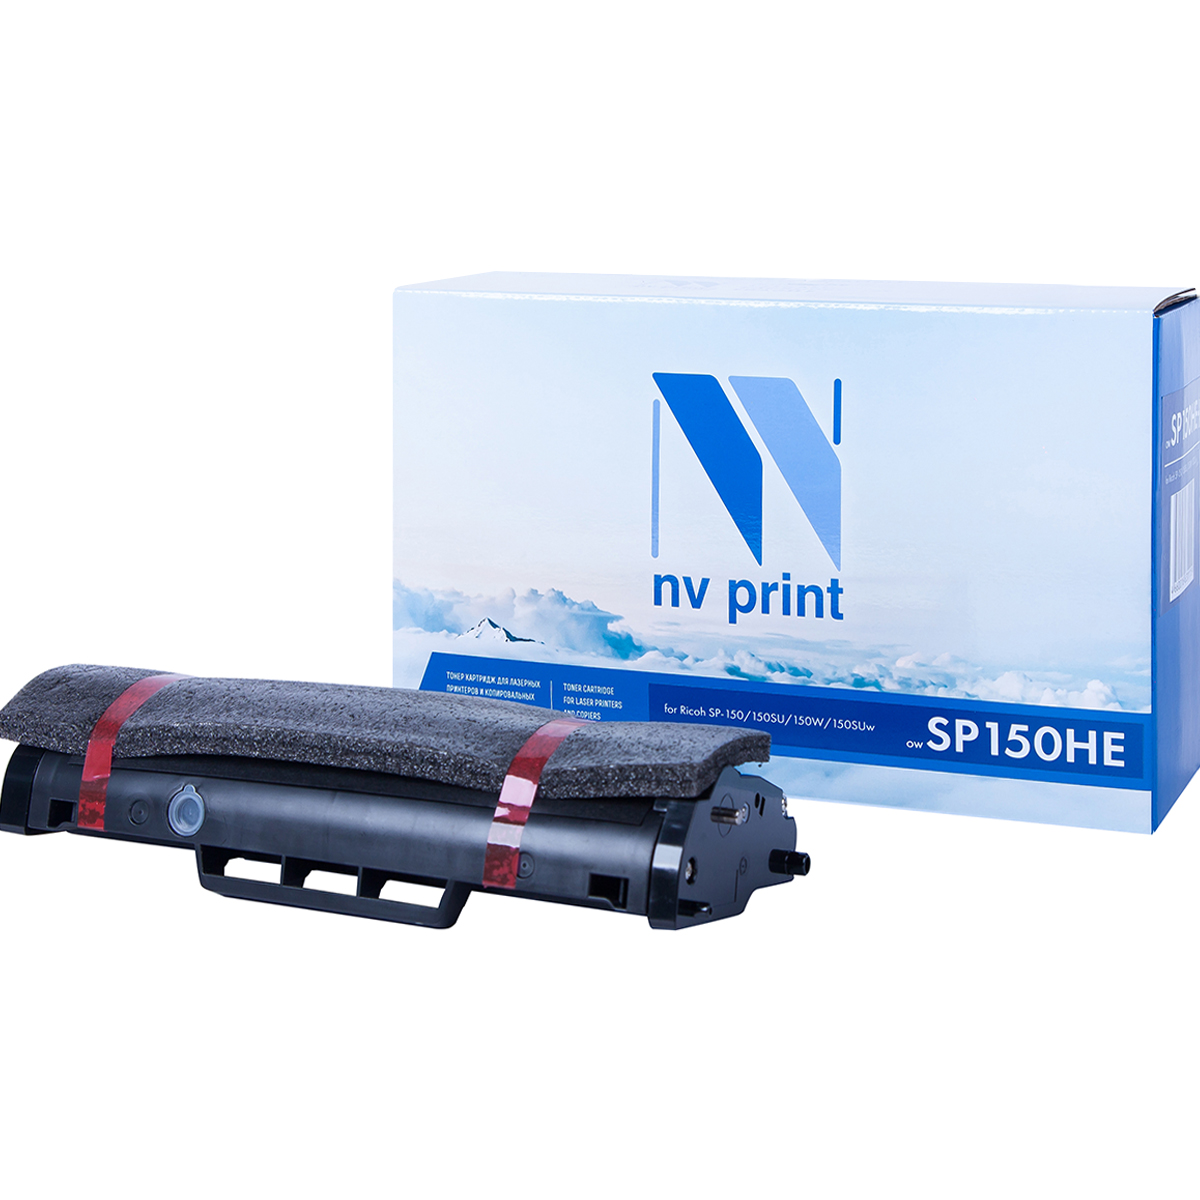 Тонер-картридж NV Print SP150HE для Ricoh SP-150/150SU/150W/150SUw (1500k) картридж sakura sp150he для ricoh sp 150 150su черный 1500 к